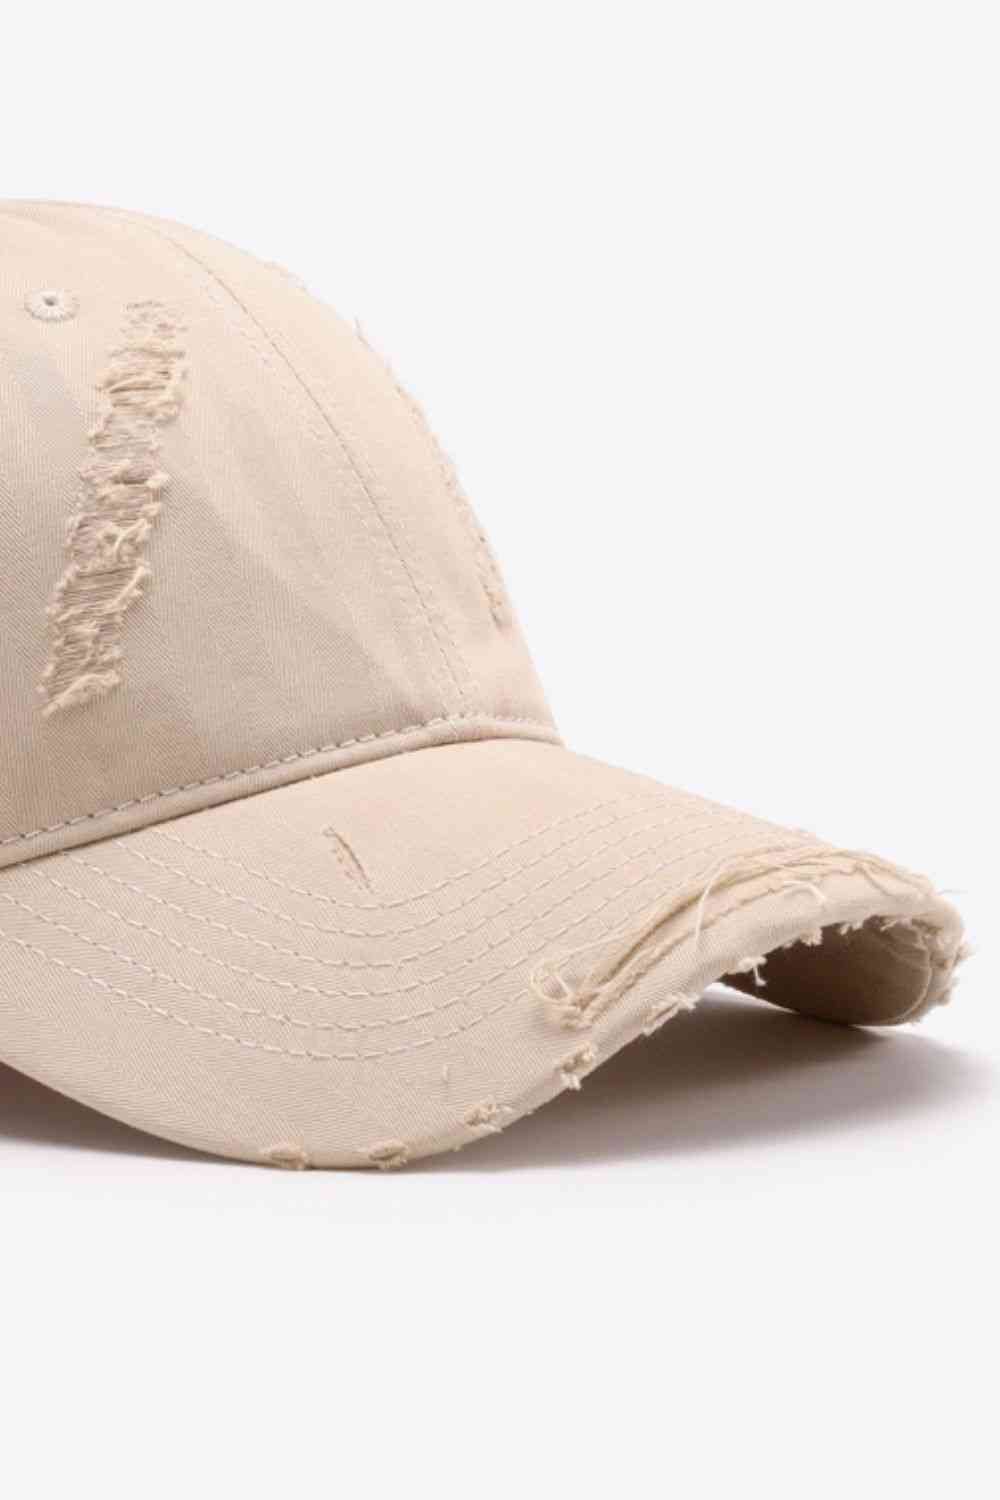 Distressed Adjustable Baseball Cap - Rose Gold Co. Shop